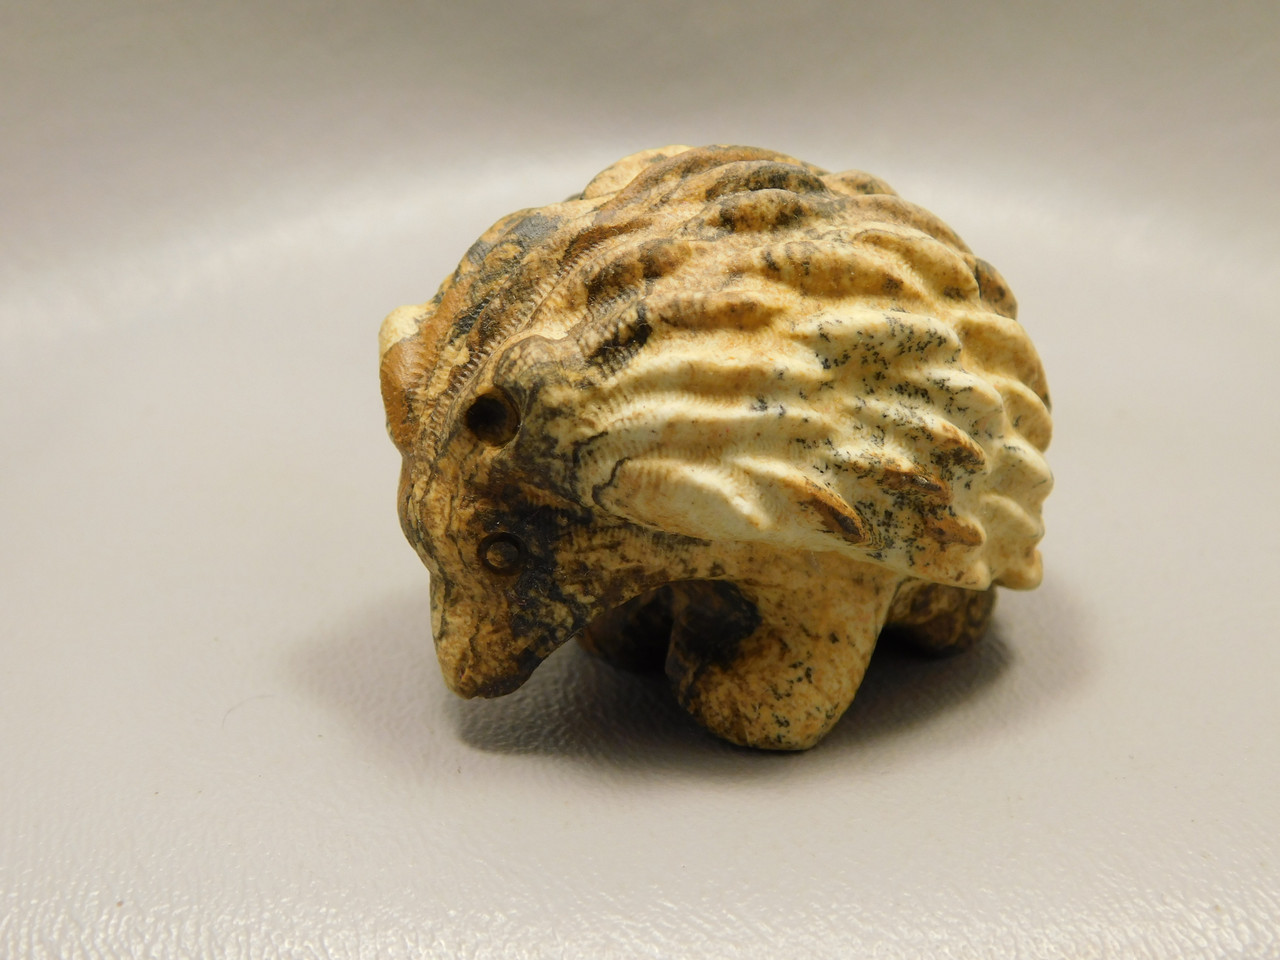 Hedgehog Figurine Kalahari Jasper Carved 2 inch Stone Animal #O4